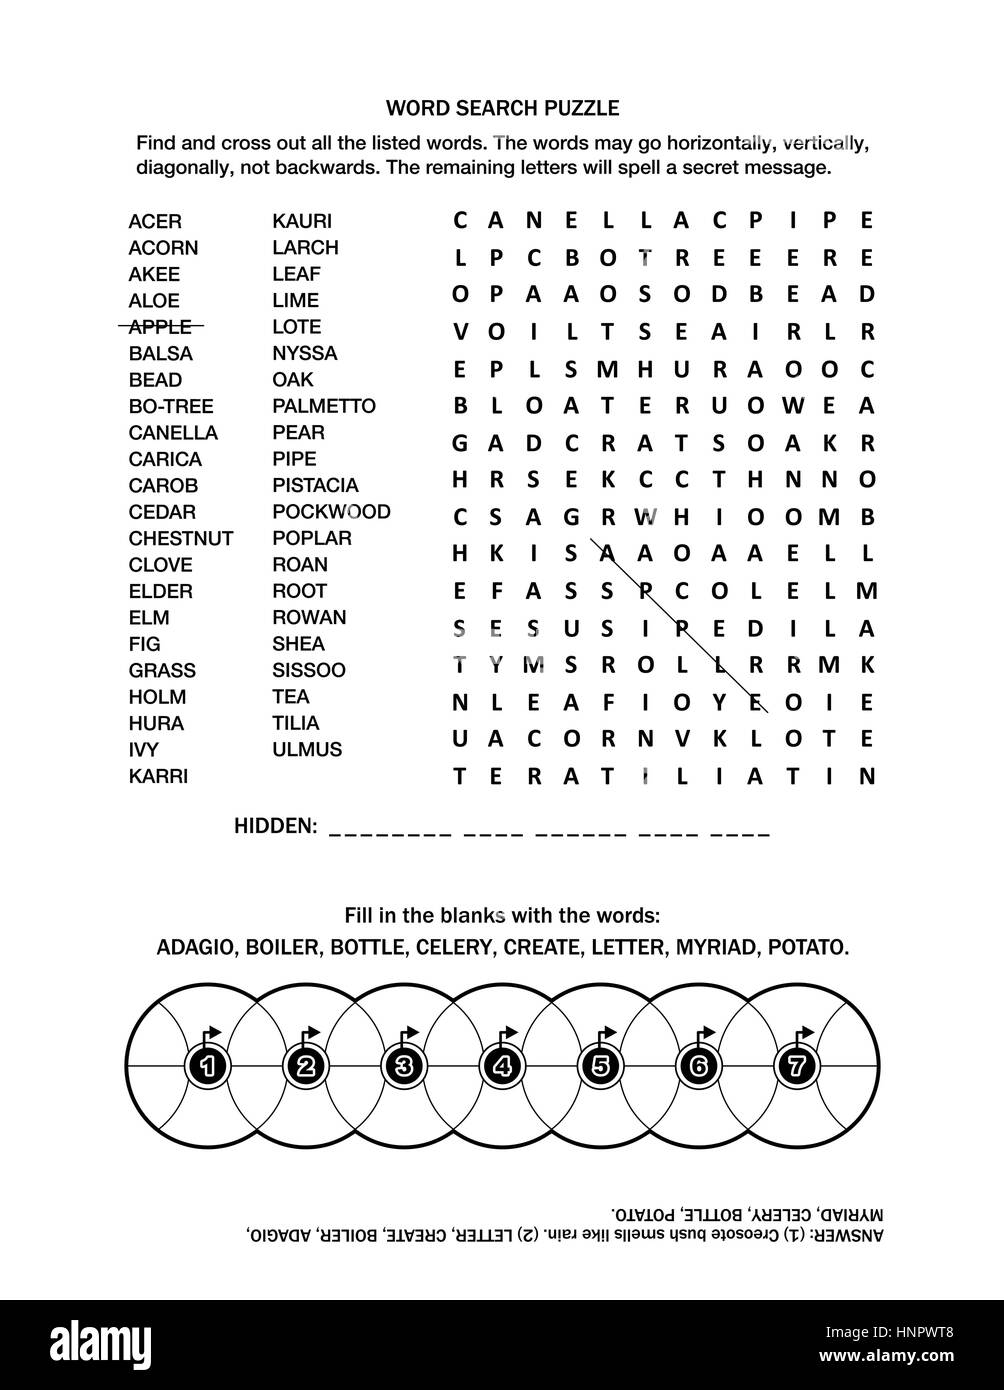 Pagina di puzzle con due giochi di parole (lingua inglese) per adulti o  bambini. Bianco e nero, A4 o formato letter. Risposta inclusa Immagine e  Vettoriale - Alamy